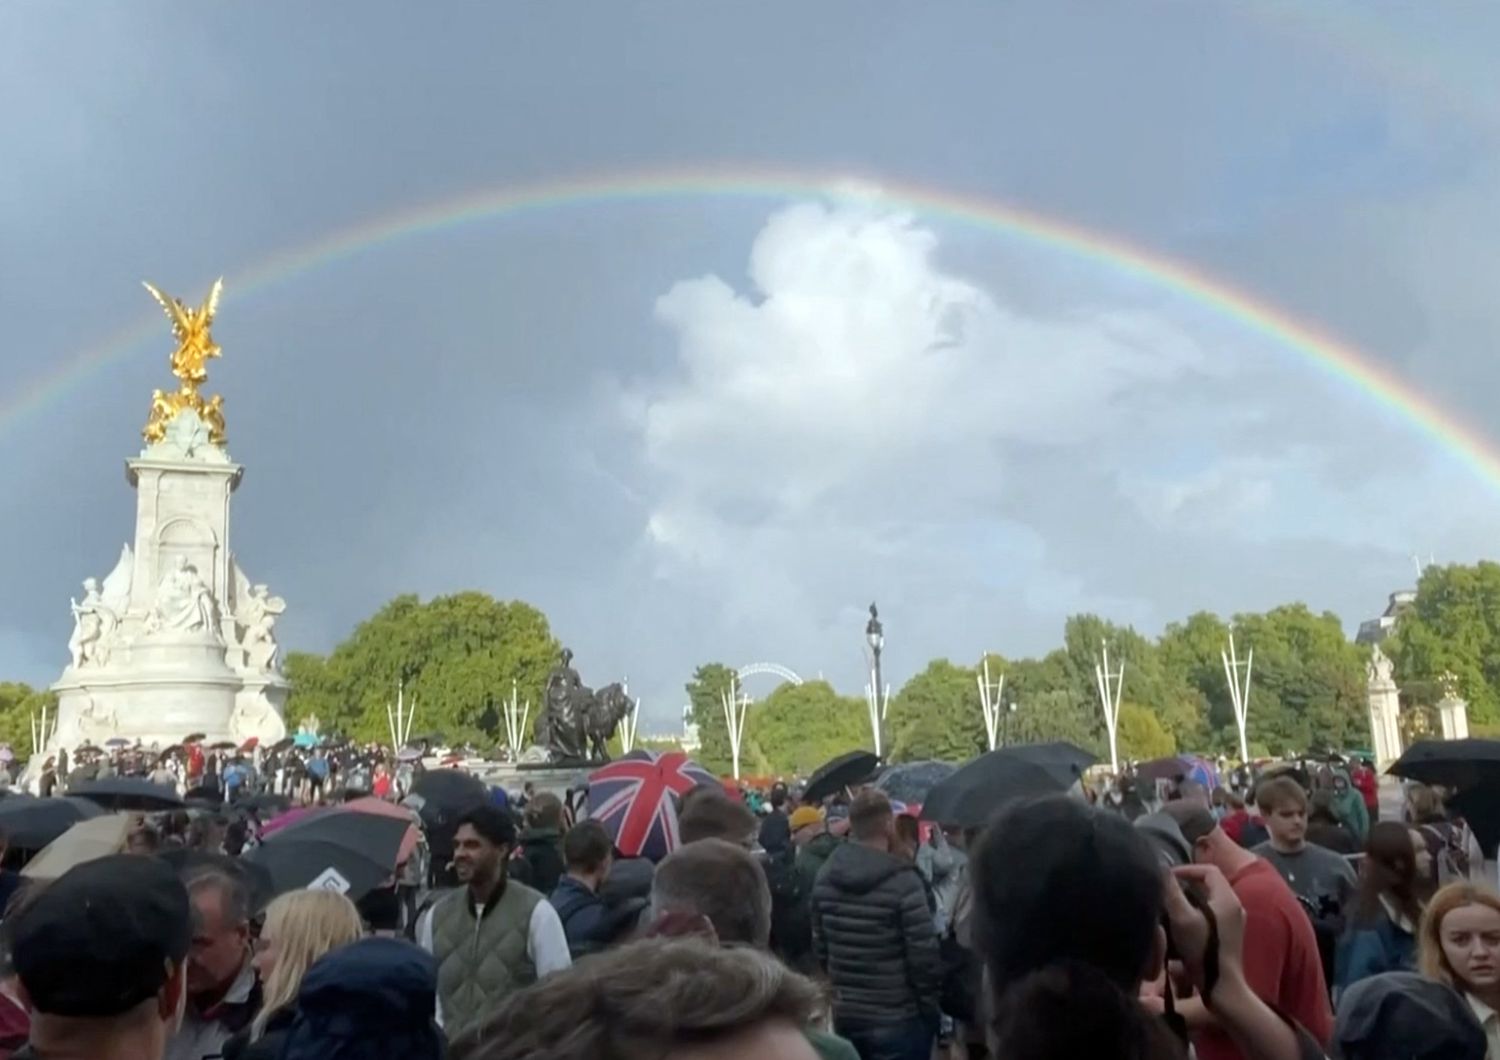 L'arcobaleno sopra Buckingham Palace all'annuncio della morte della regina Elisabetta